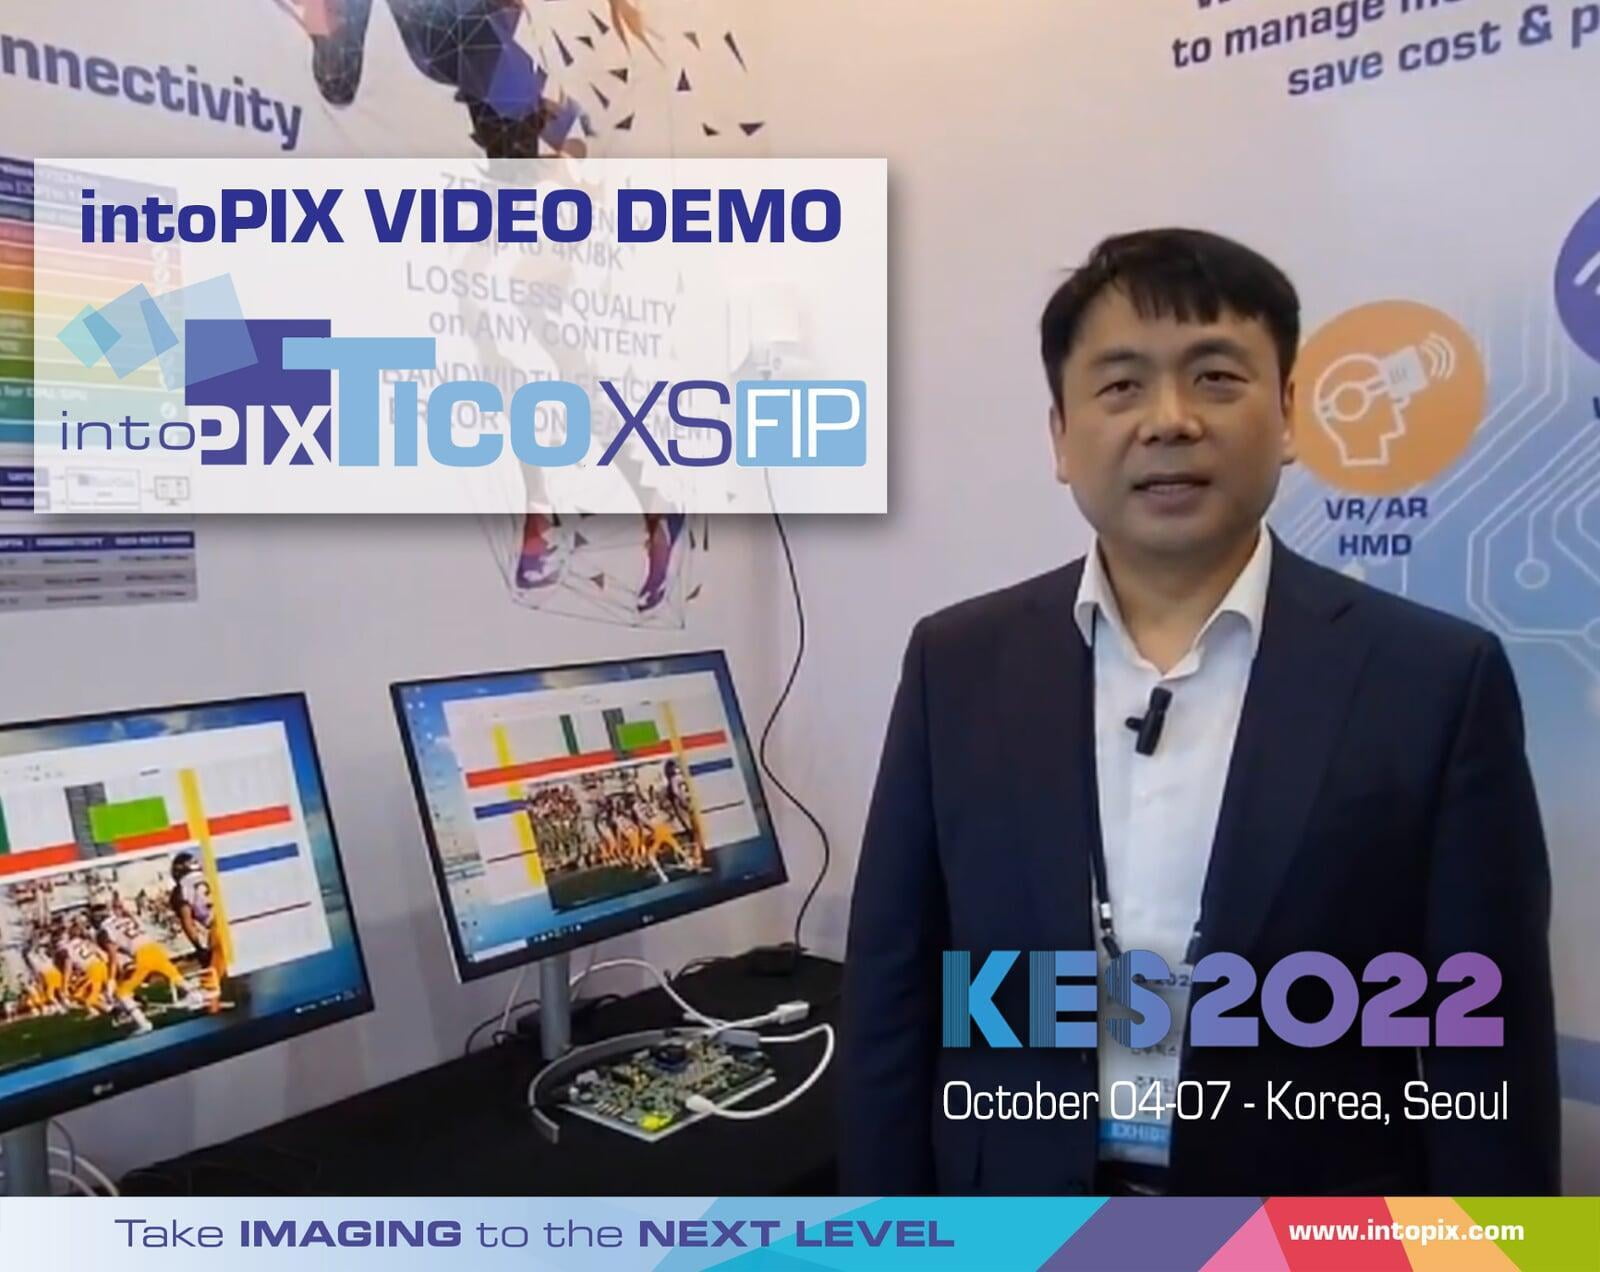 Démonstration vidéo en coréen de KES2022 : Présentation du nouveau intoPIX TicoXS FIP pour la transmission sans fil